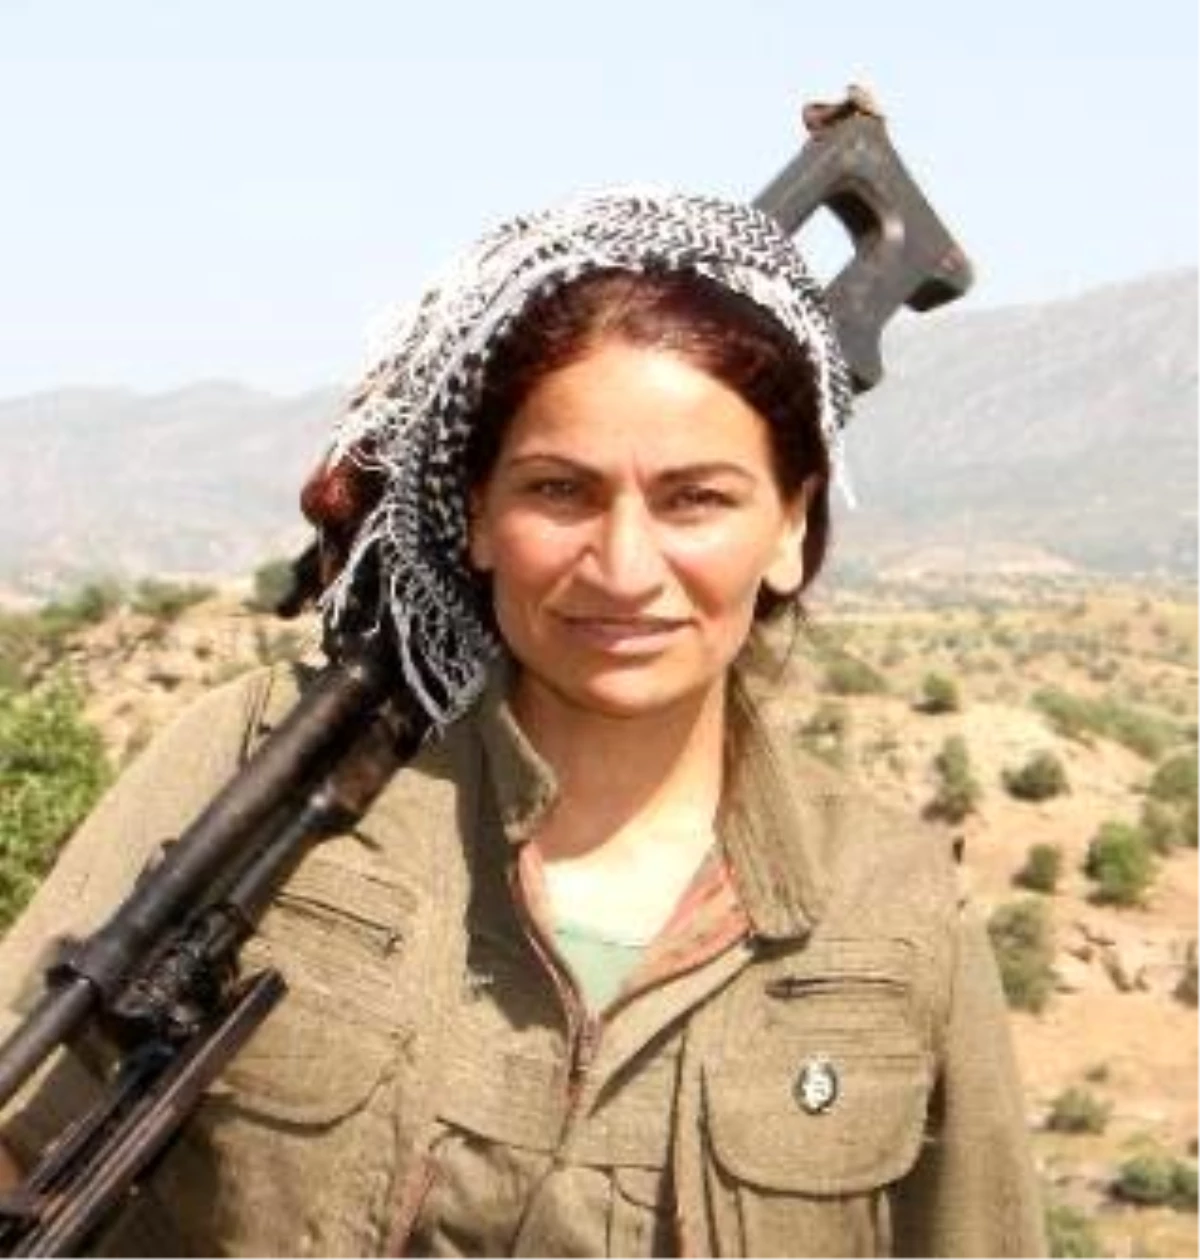 MİT, terör örgütü PKK\'nın sözde cephane sorumlusu "Ruken Zilan" kod adlı teröristi Duhok kırsalında etkisiz hale getirdi.